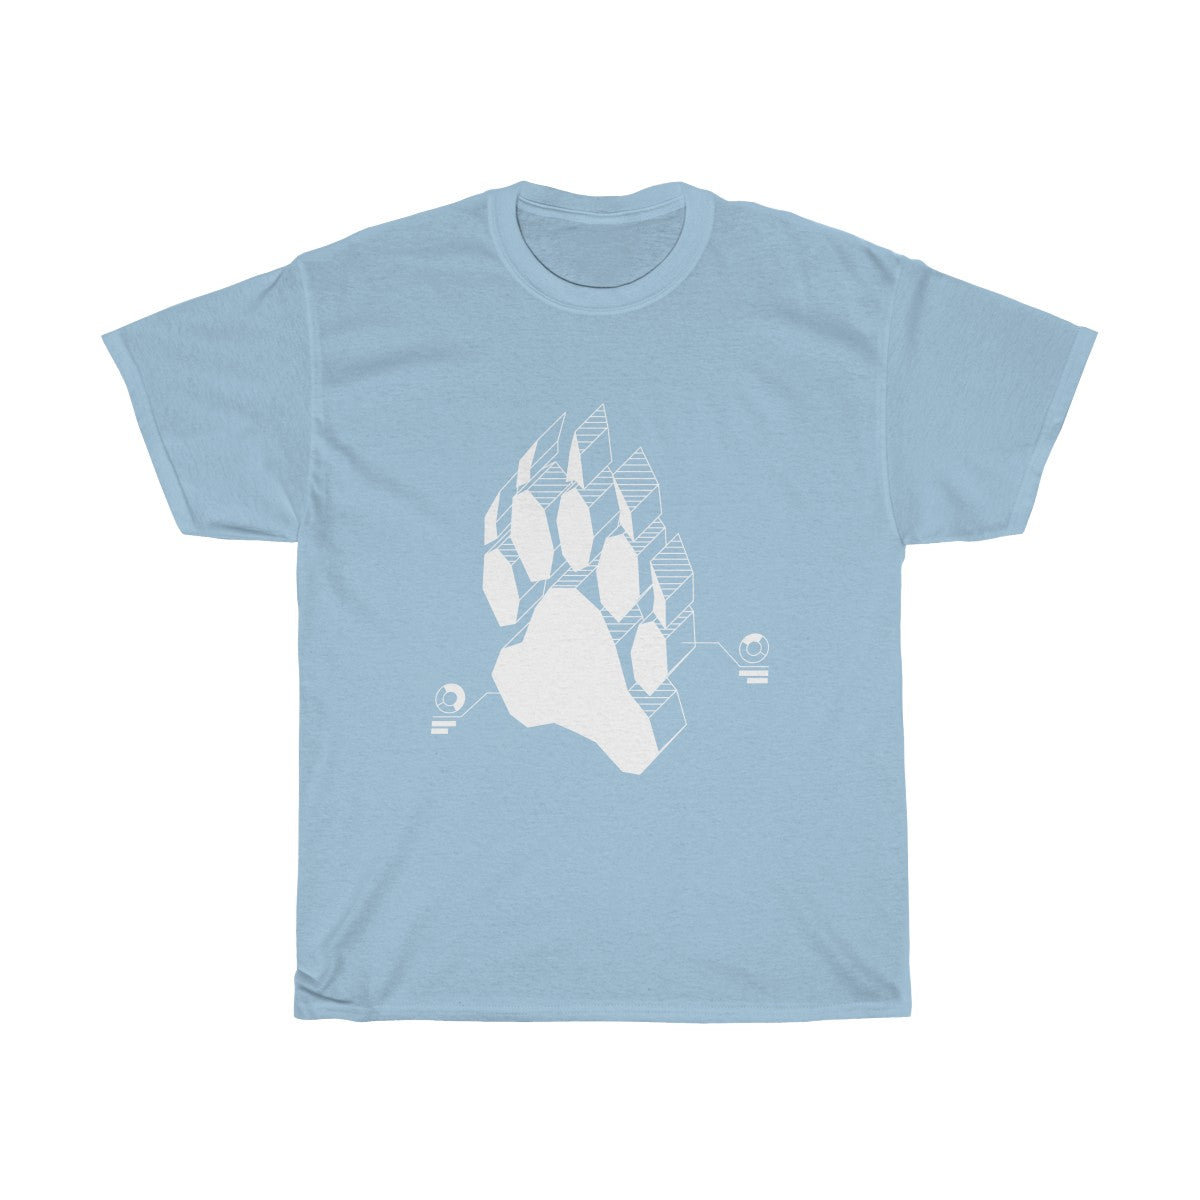 Techno Bear - T-Shirt T-Shirt Wexon Light Blue S 